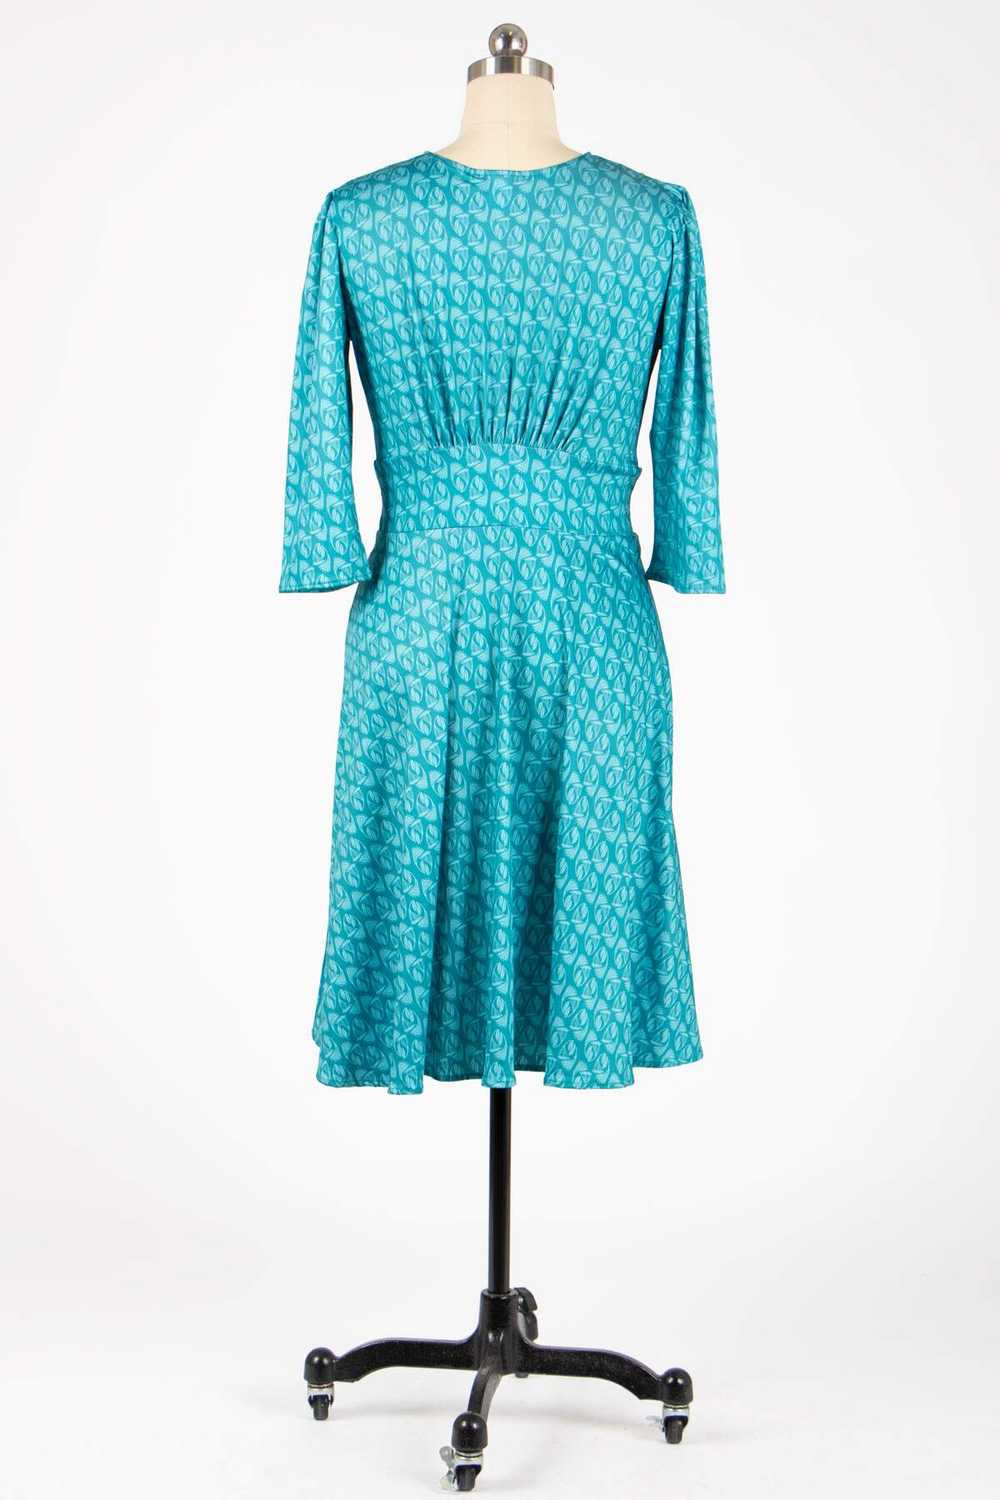 Karina Dresses Megan Dress - Teal Appeal - image 6